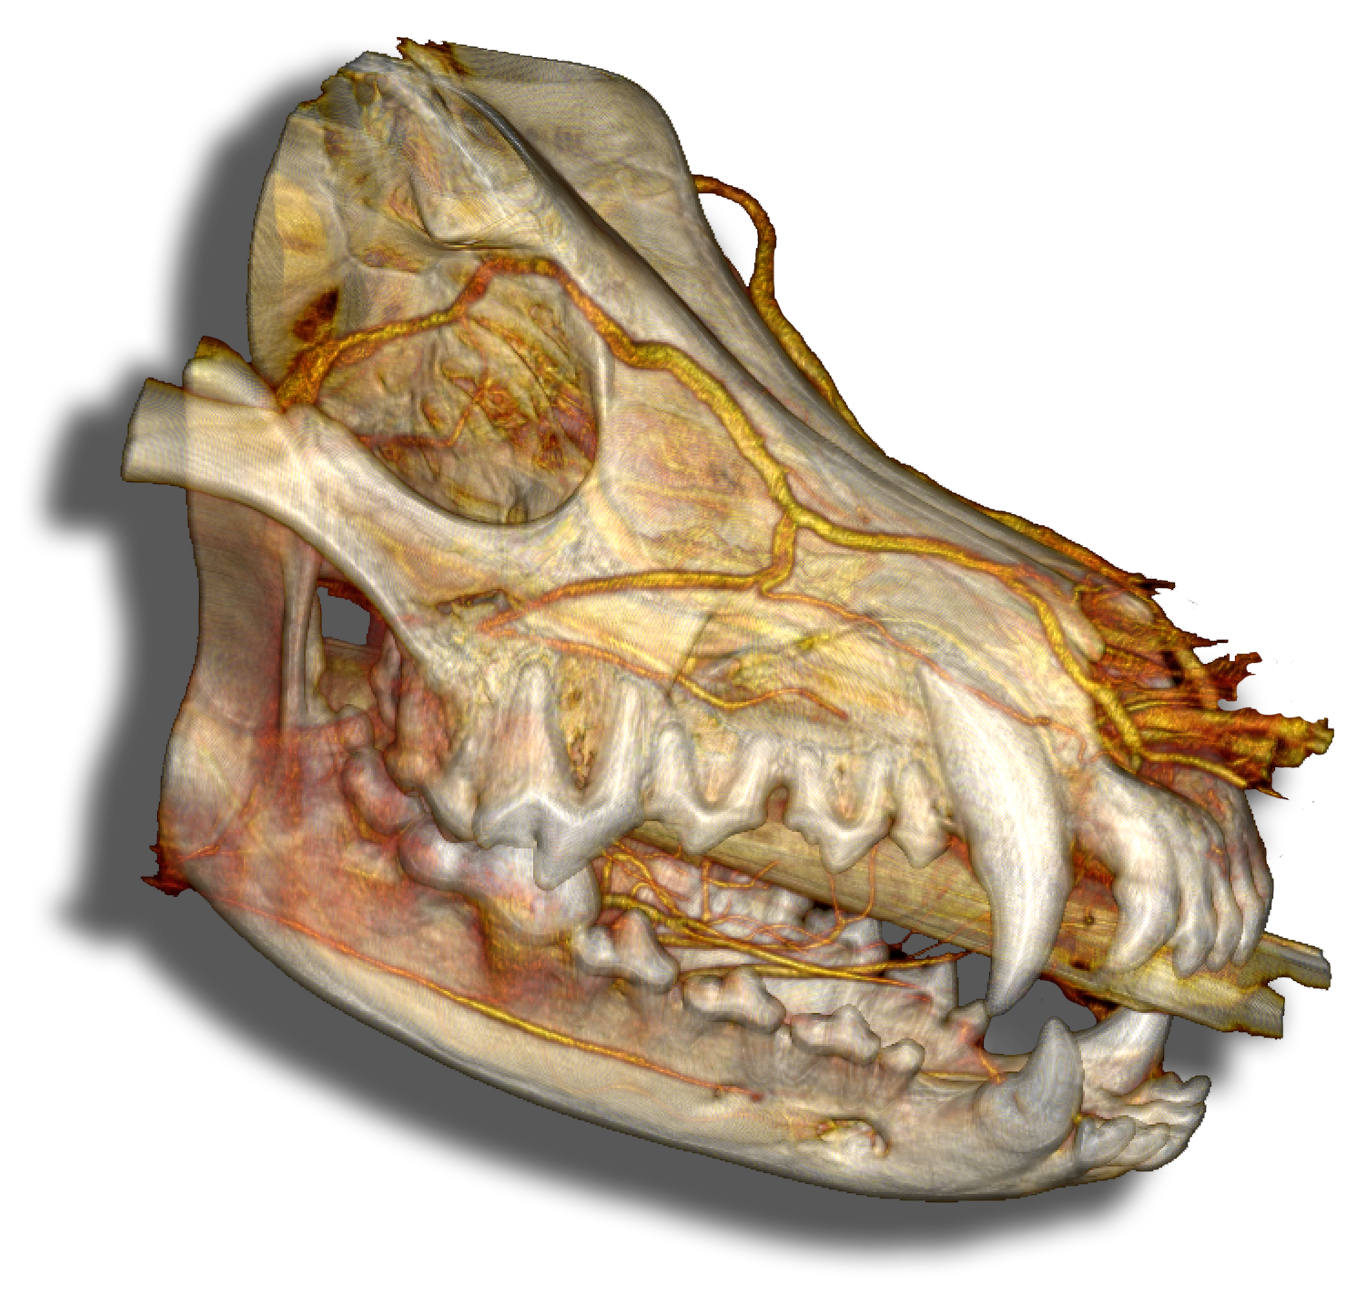 3D reconstruction of a dog skull